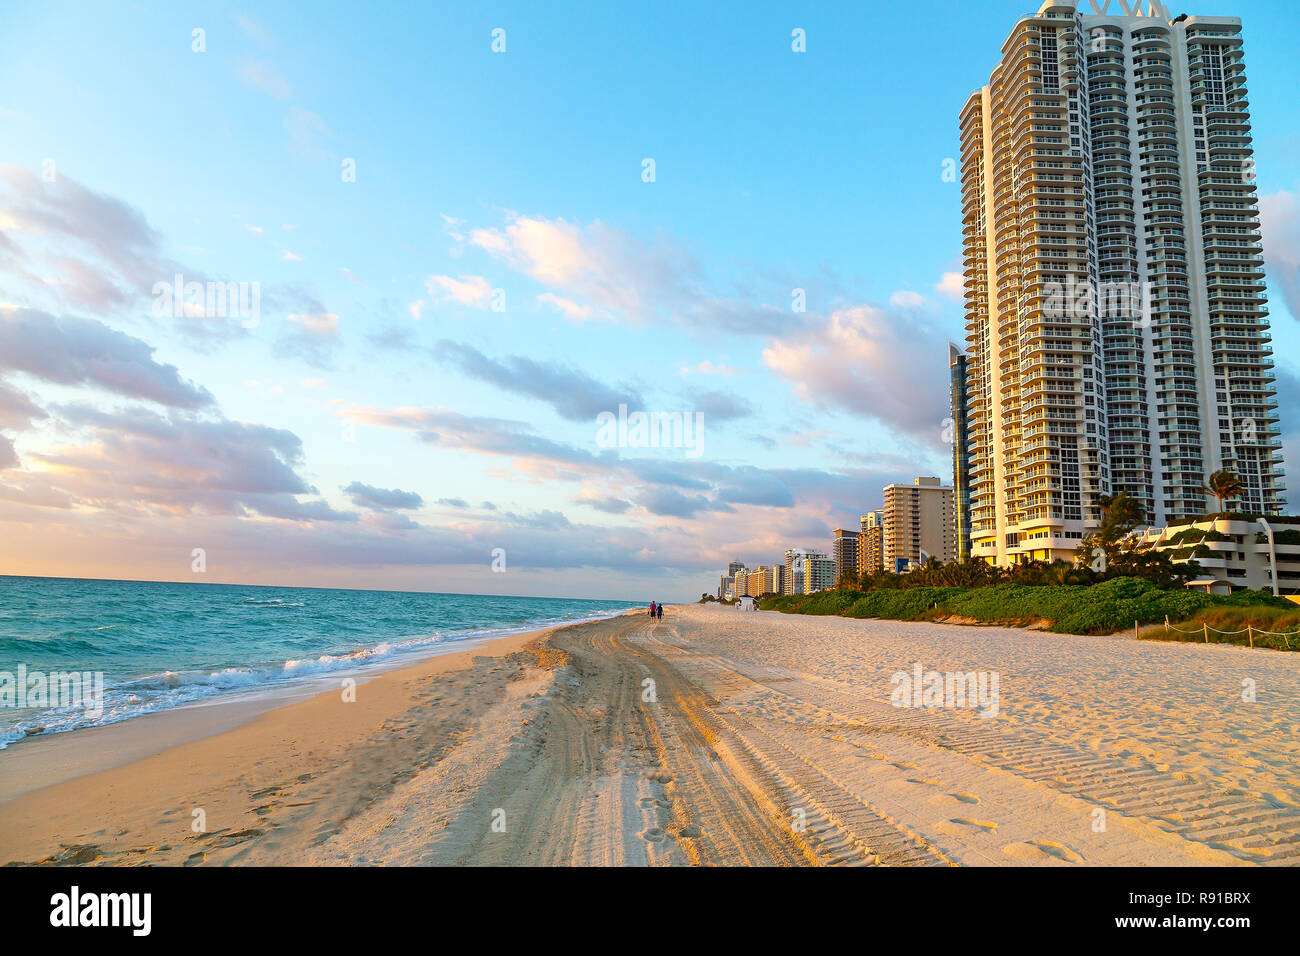 Lever du soleil à Miami Beach, en Floride. Le soleil du matin met en lumière les couleurs douces d'une plage de sable et de bâtiments. Banque D'Images